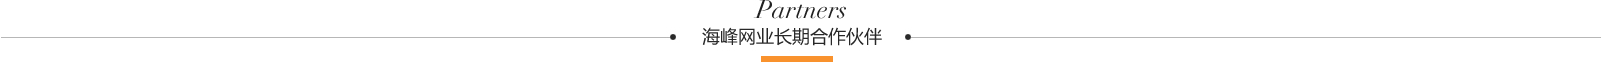 海峰网业长期合作伙伴